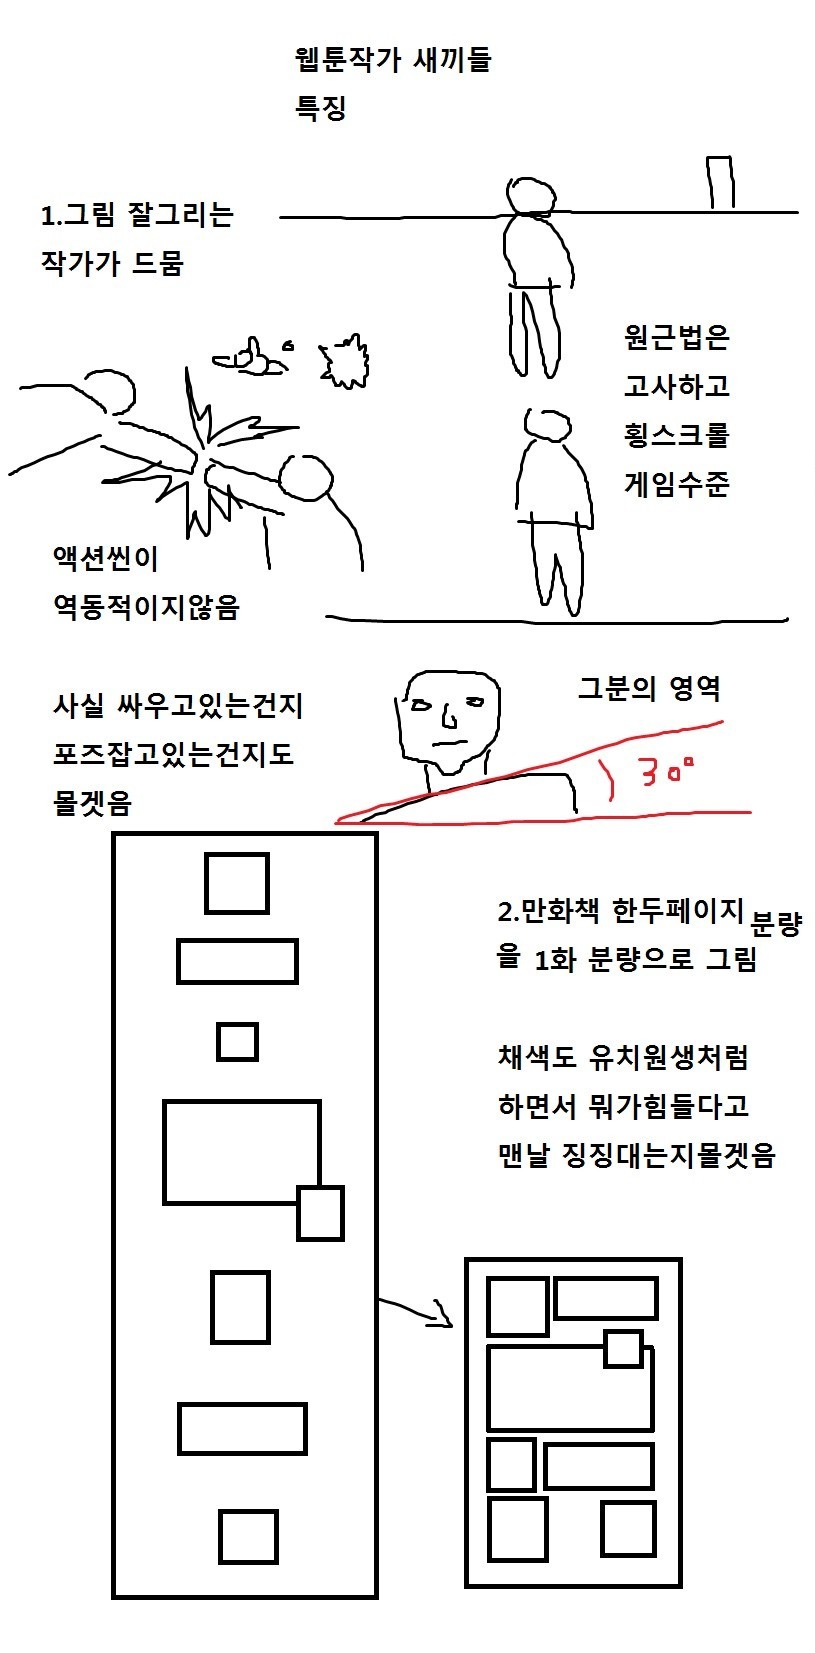 한국웹툰 특징